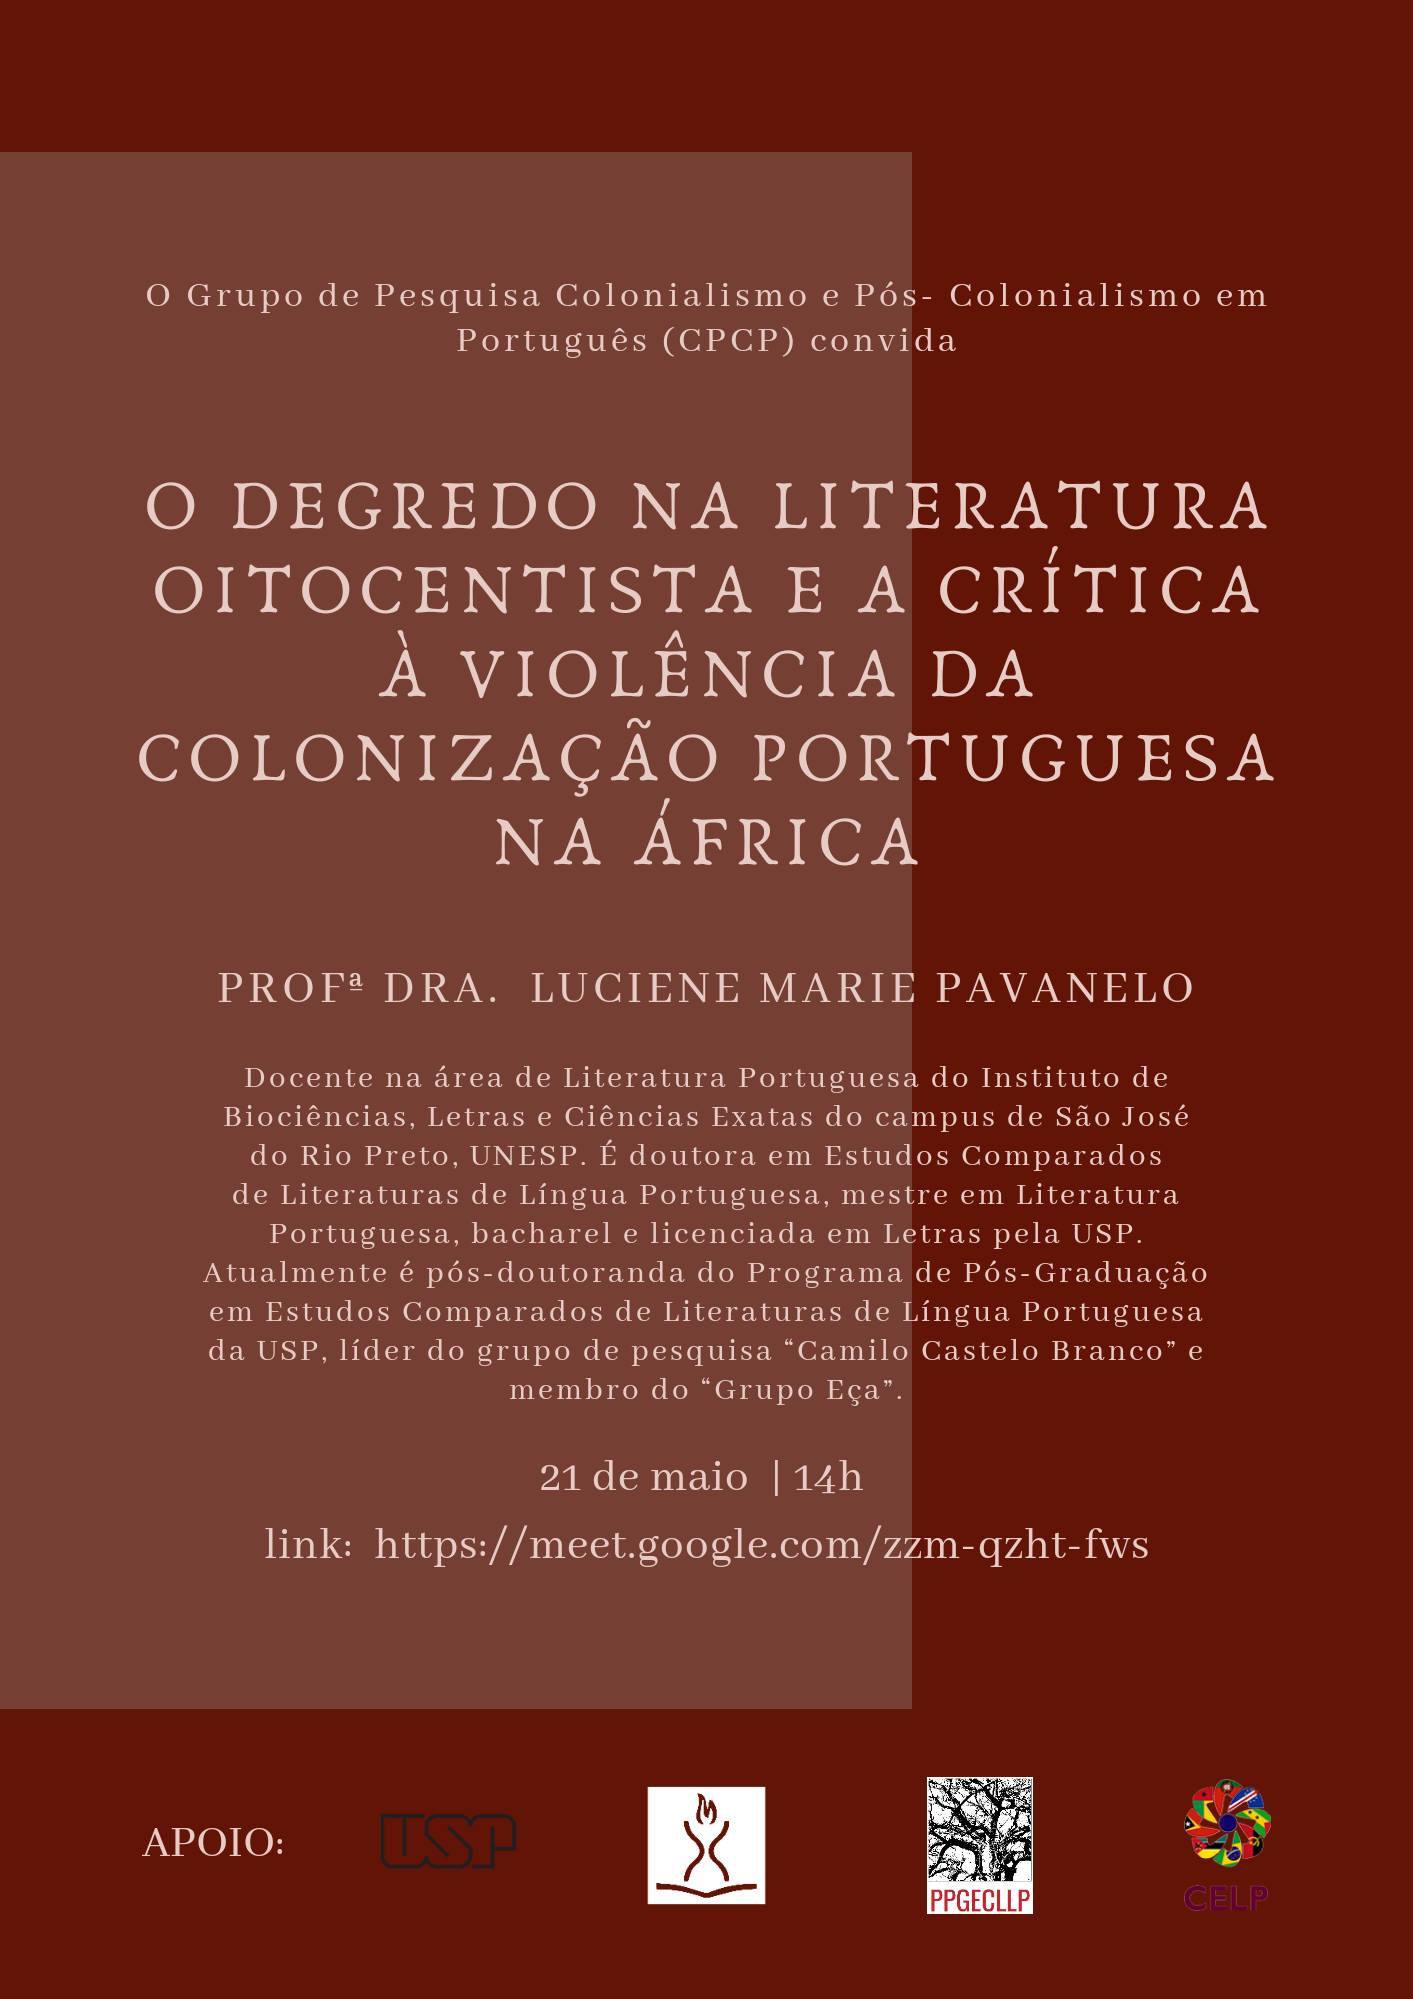 Live – O Degredo na Literatura Oitocentista e a crítica à violência da colonização portuguesa na África, com a Profa. Dra. Luciene Marie Pavanelo (UNESP - IBILCE)